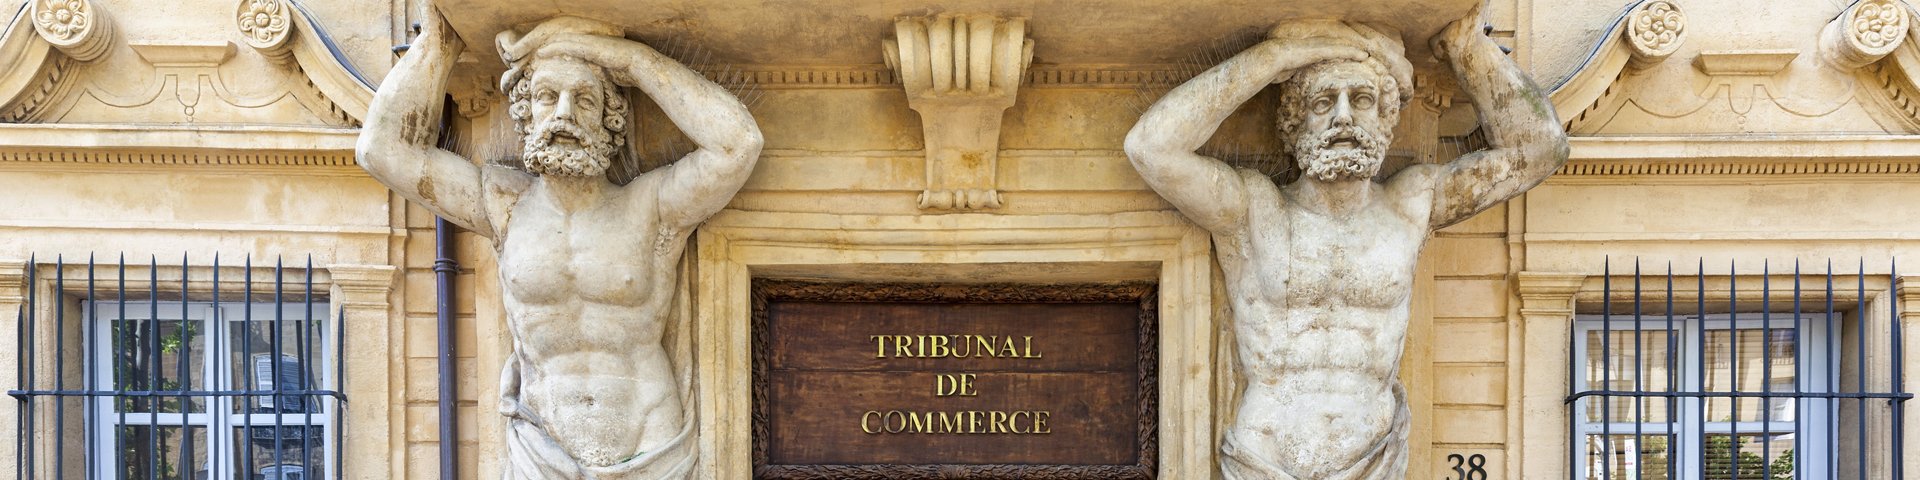 Tribunal de commerce - Aix en Provence